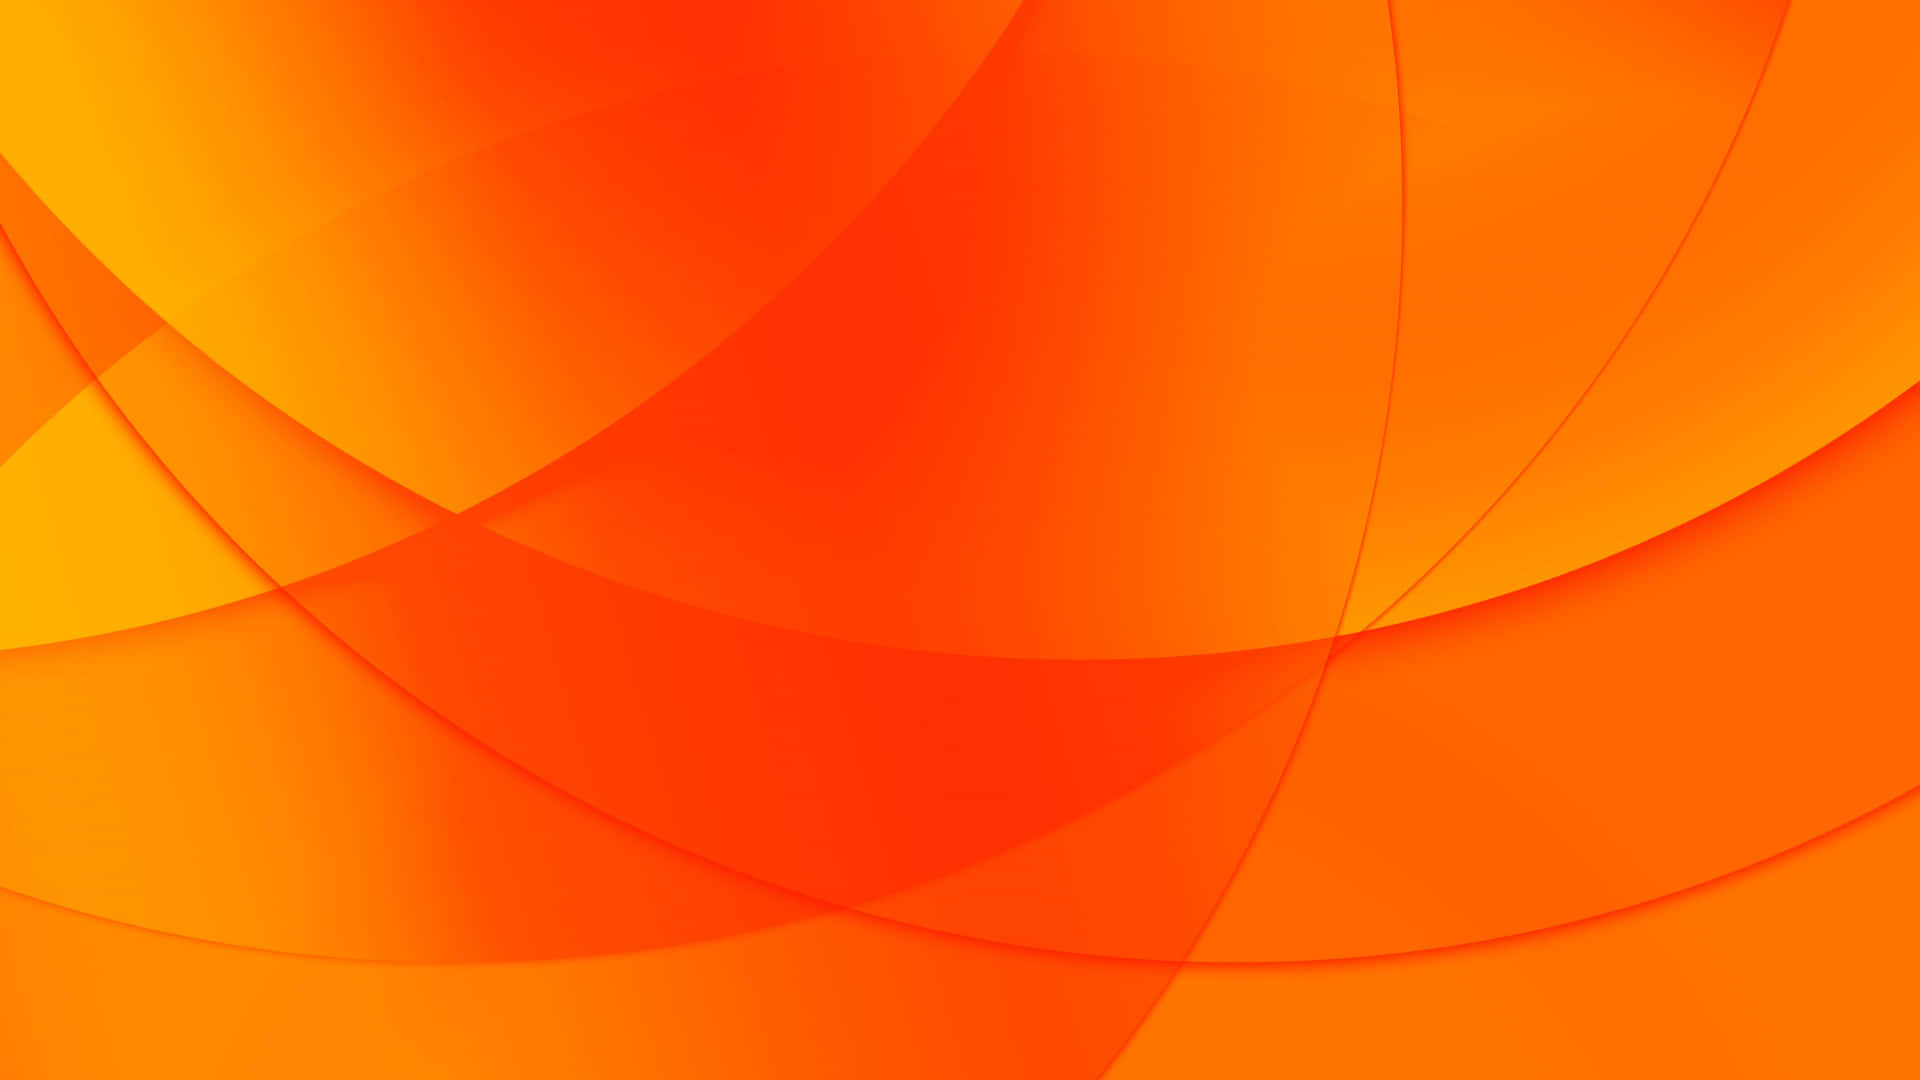 Hình nền màu cam với những thiết kế tuyệt đẹp và nổi bật, sẽ mang đến sự mới lạ và thú vị cho màn hình thiết bị của bạn. Khám phá ngay những hình ảnh nền màu cam đẹp mắt và độc đáo này để tạo điểm nhấn cho màn hình của bạn.